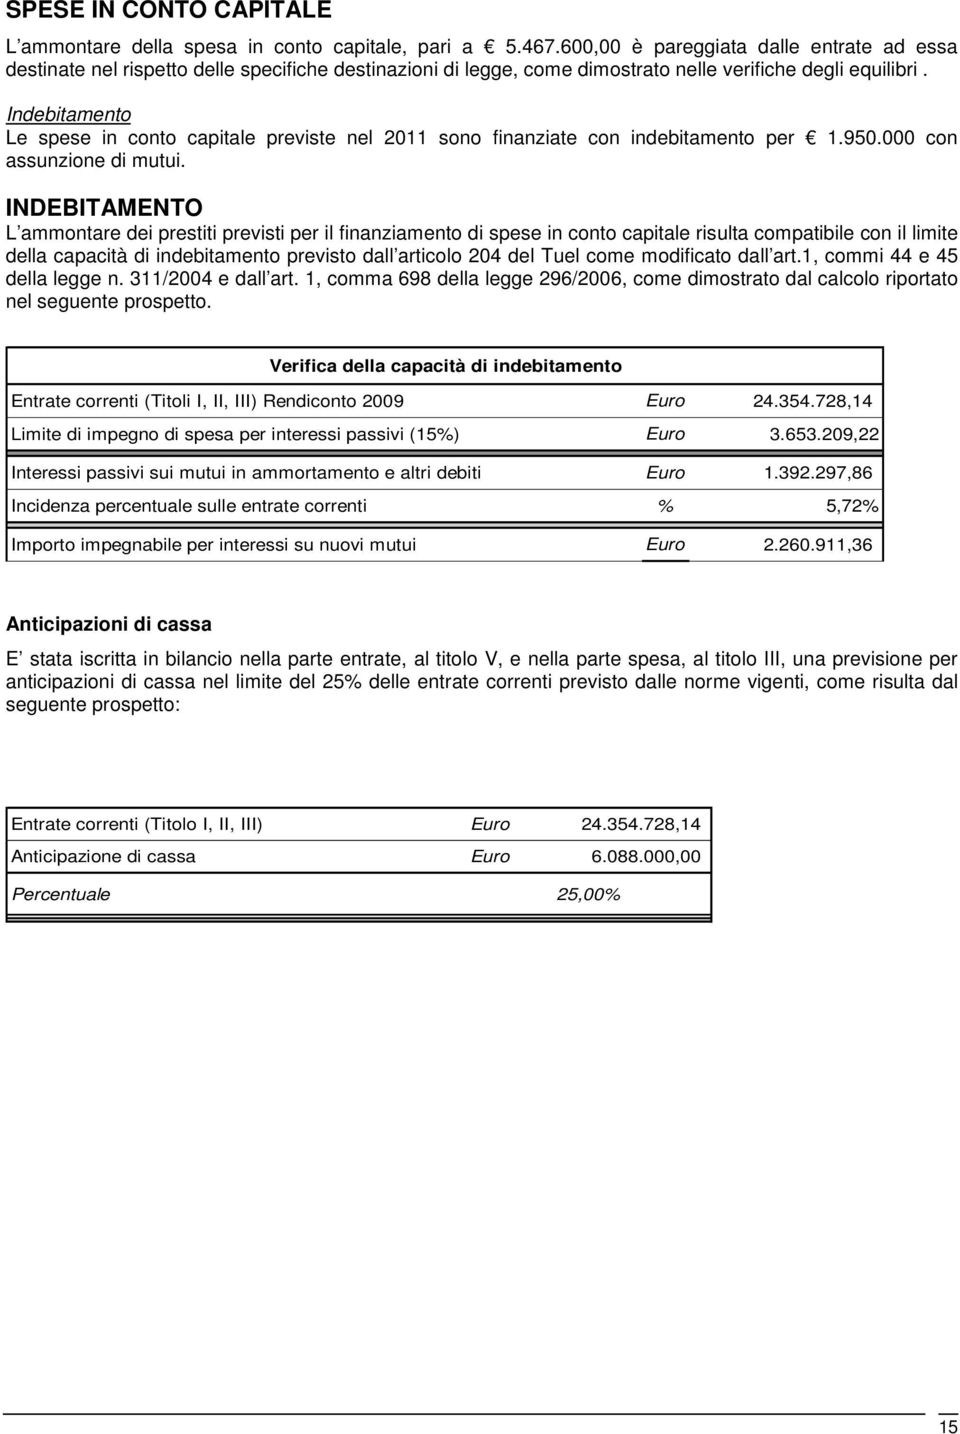 Indebitamento Le spese in conto capitale previste nel 2011 sono finanziate con indebitamento per 1.950.000 con assunzione di mutui.